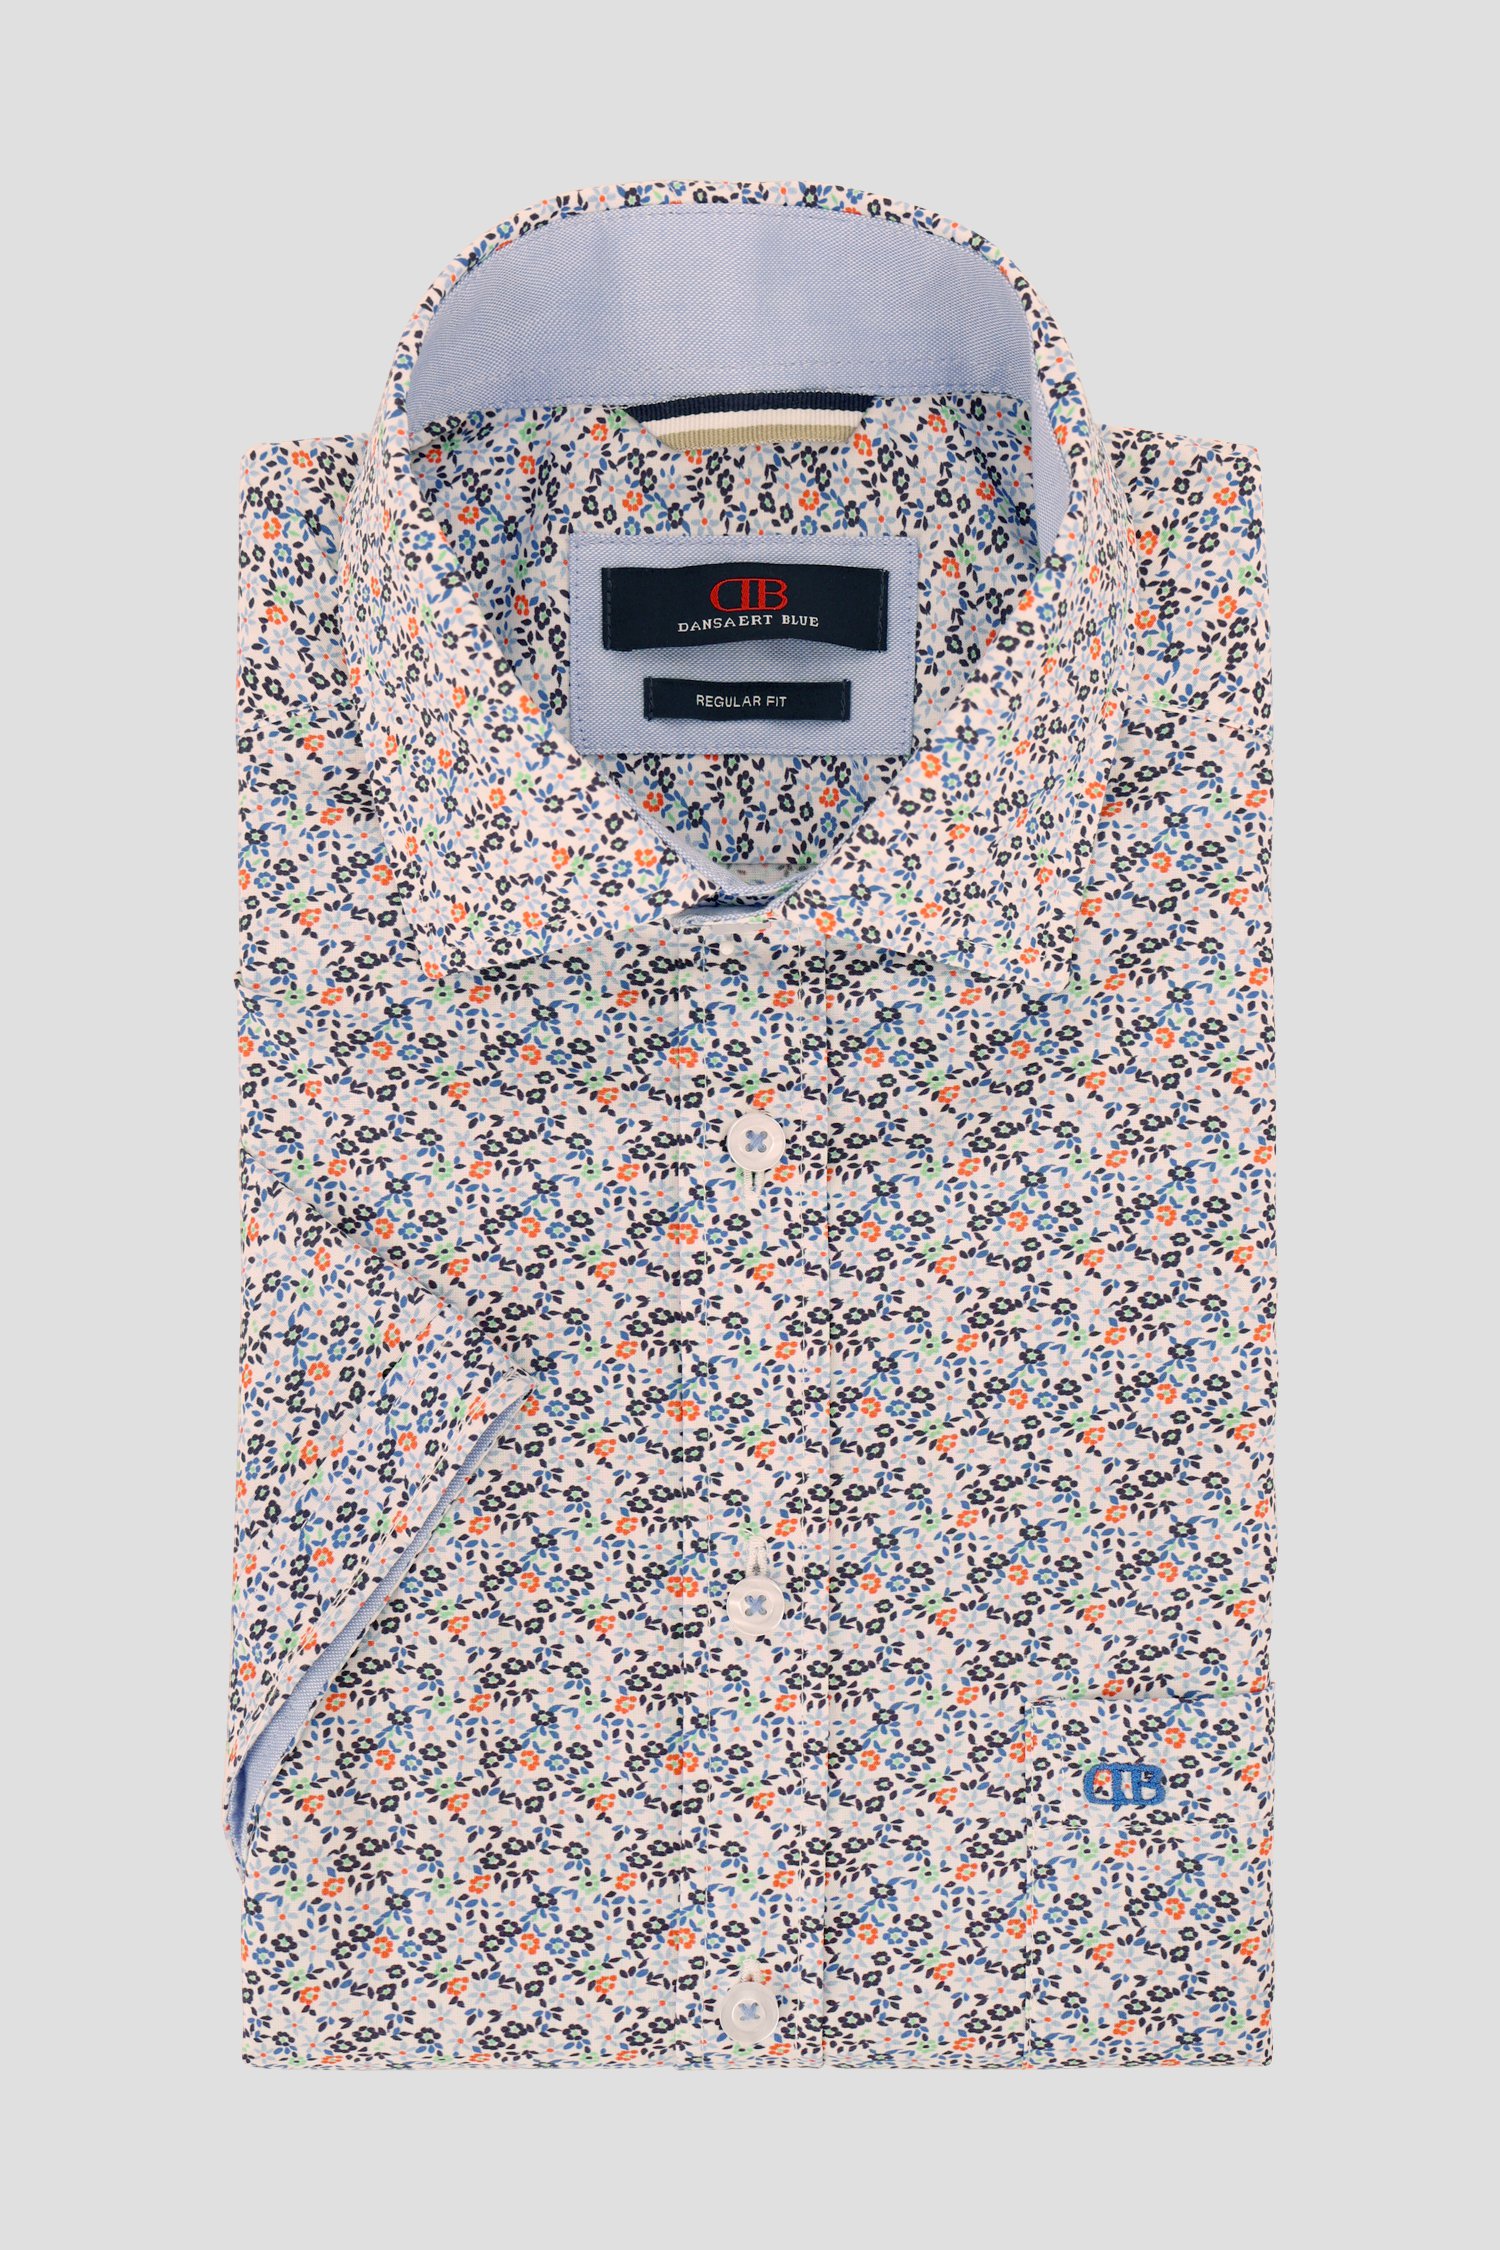 Lichtblauw hemd met bloemenprint - Regular fit van Dansaert Blue voor Heren